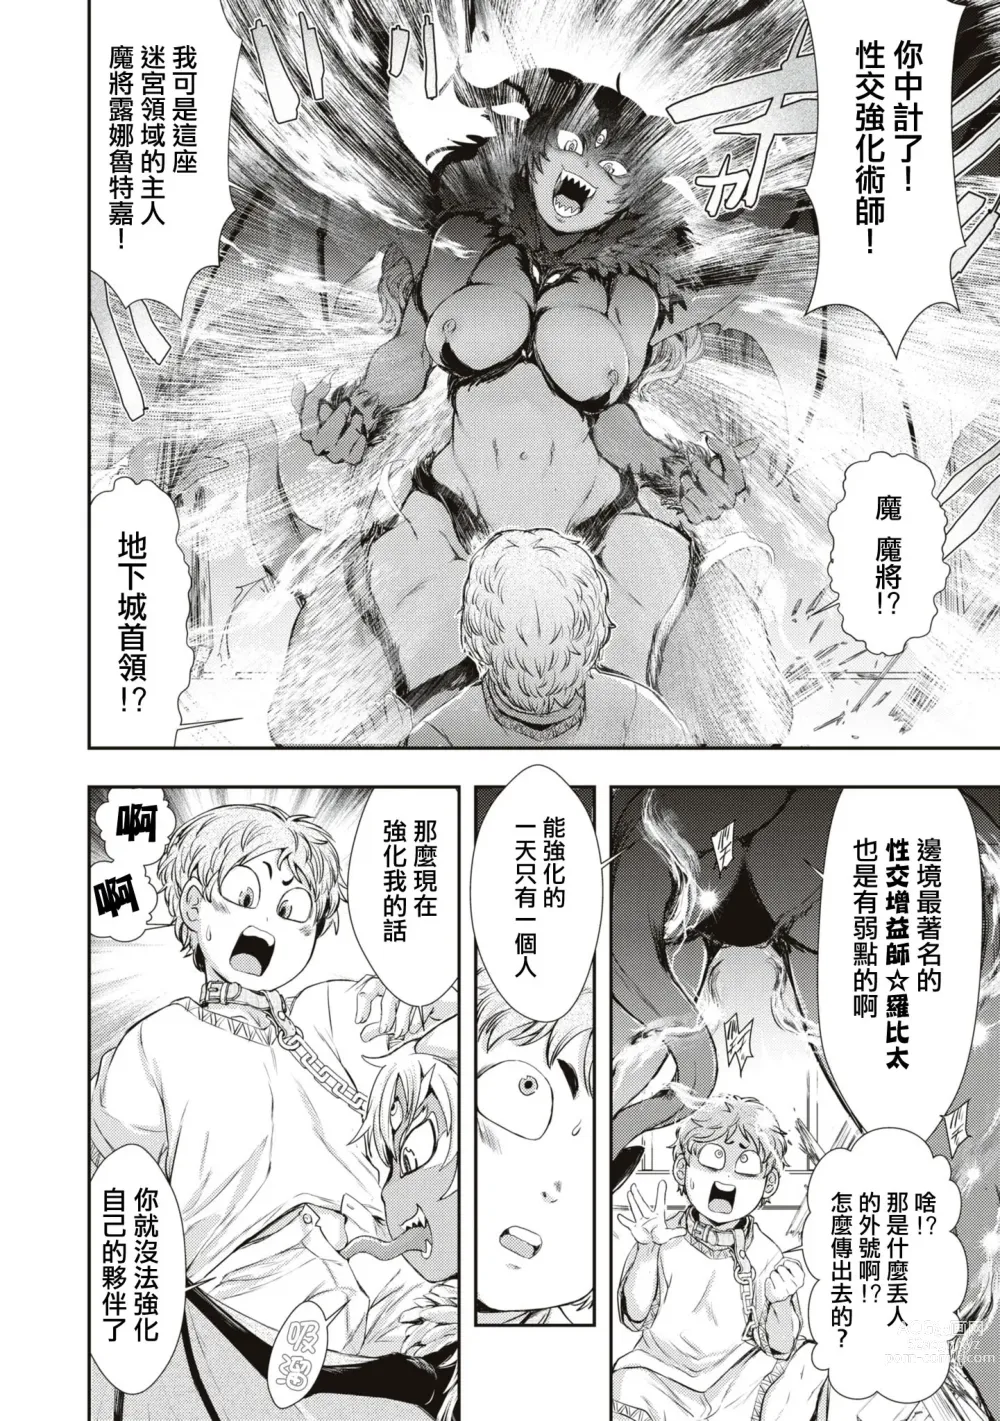 Page 15 of manga Bafutte☆Robita